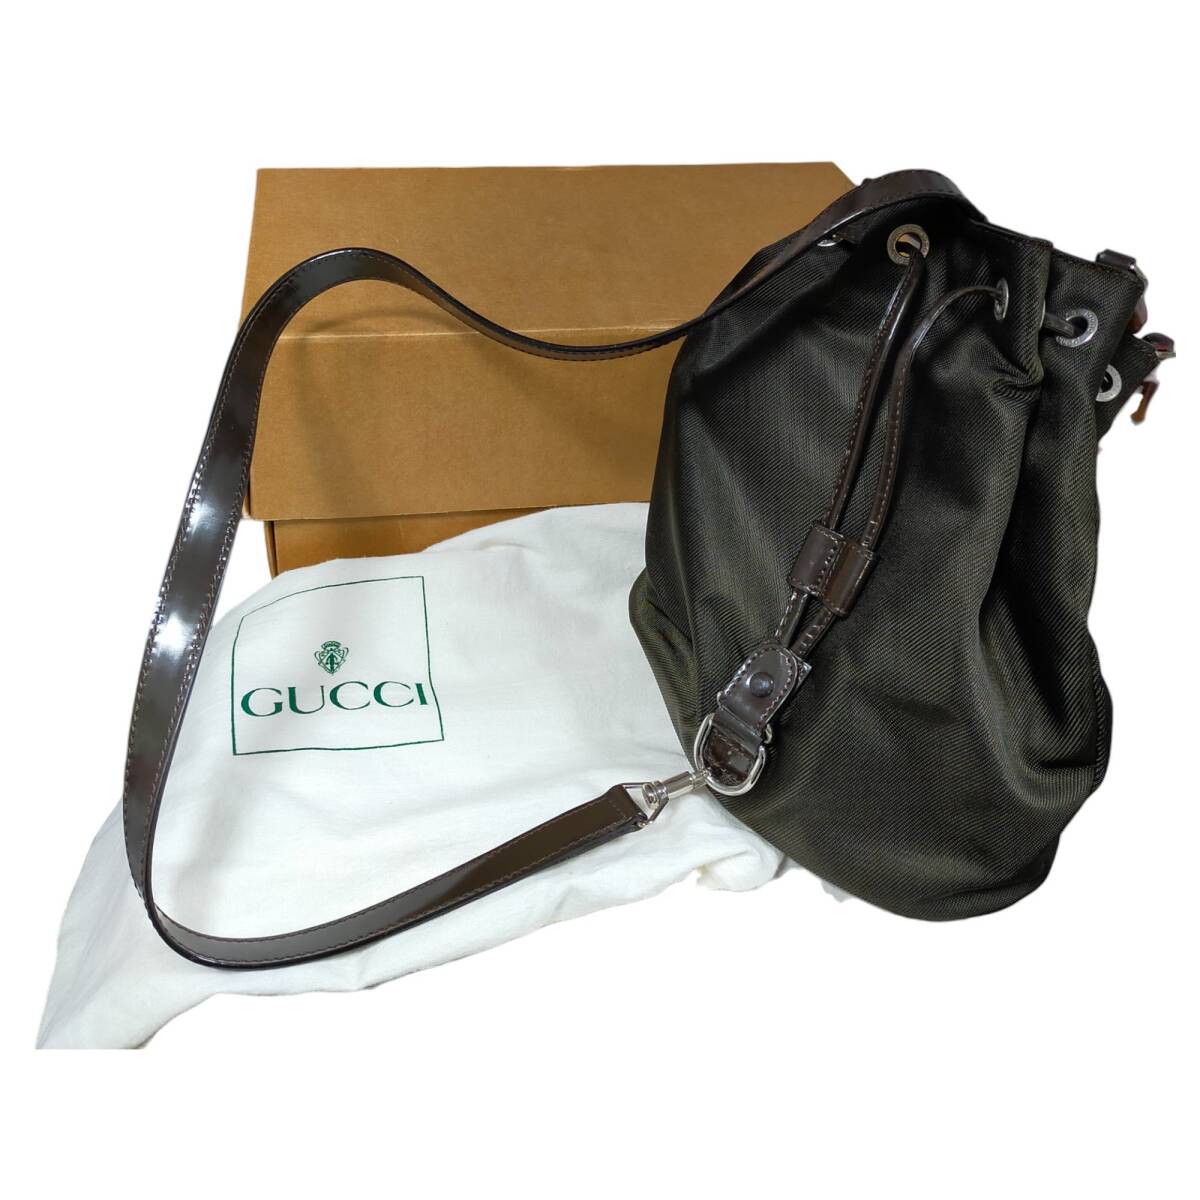 ◆中古品◆GUCCI グッチ バンブー レザー 巾着型 ミニバッグ ダークカラー ブランド バッグ 鞄 箱付き E61189NAの画像1